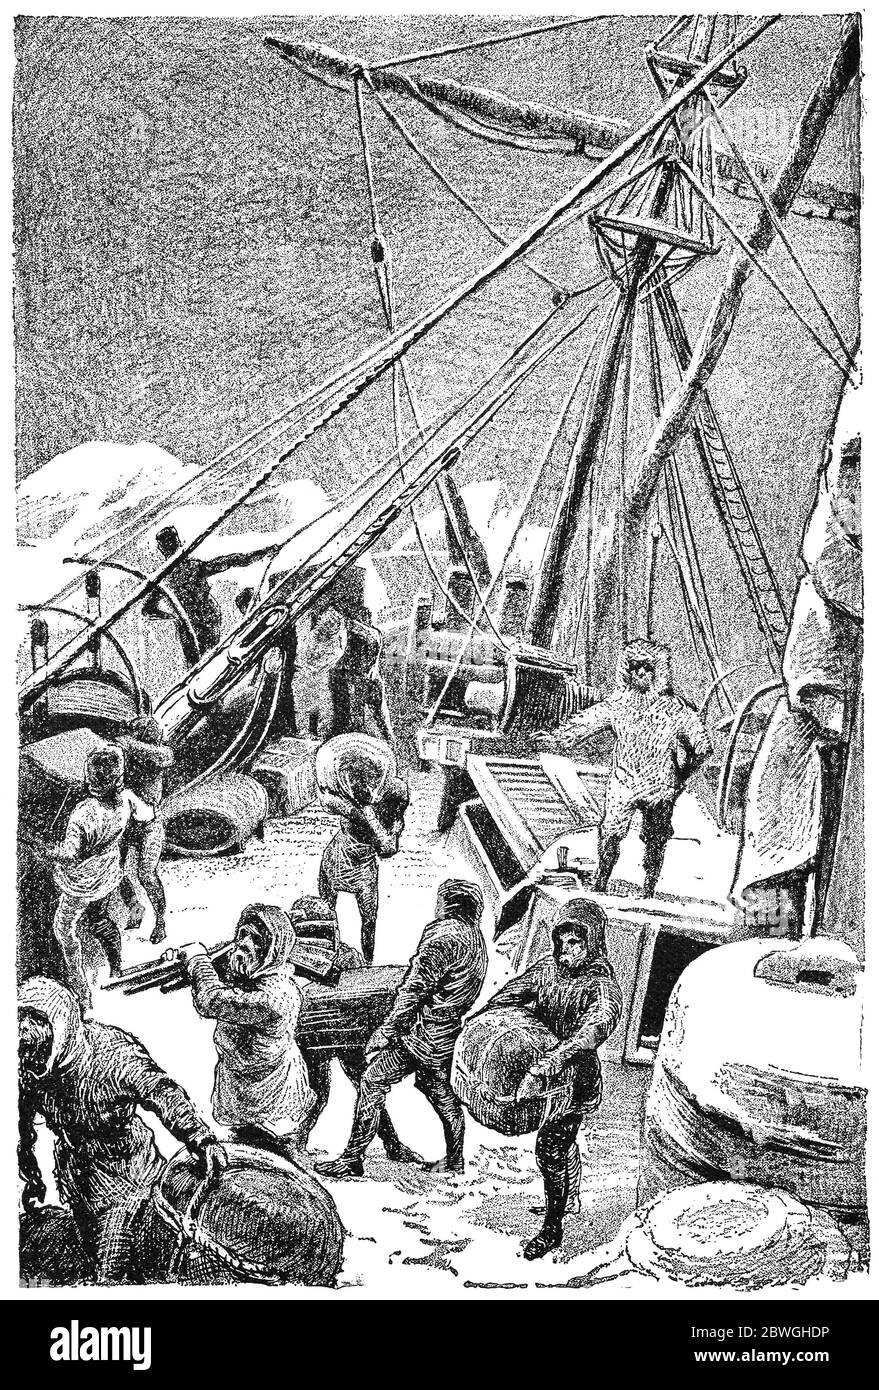 Polarforschung Segelmotorschoner Admiral Tegetgoff im Packeis, Mai 1874. Illustration des 19. Jahrhunderts. Weißer Hintergrund. Stockfoto